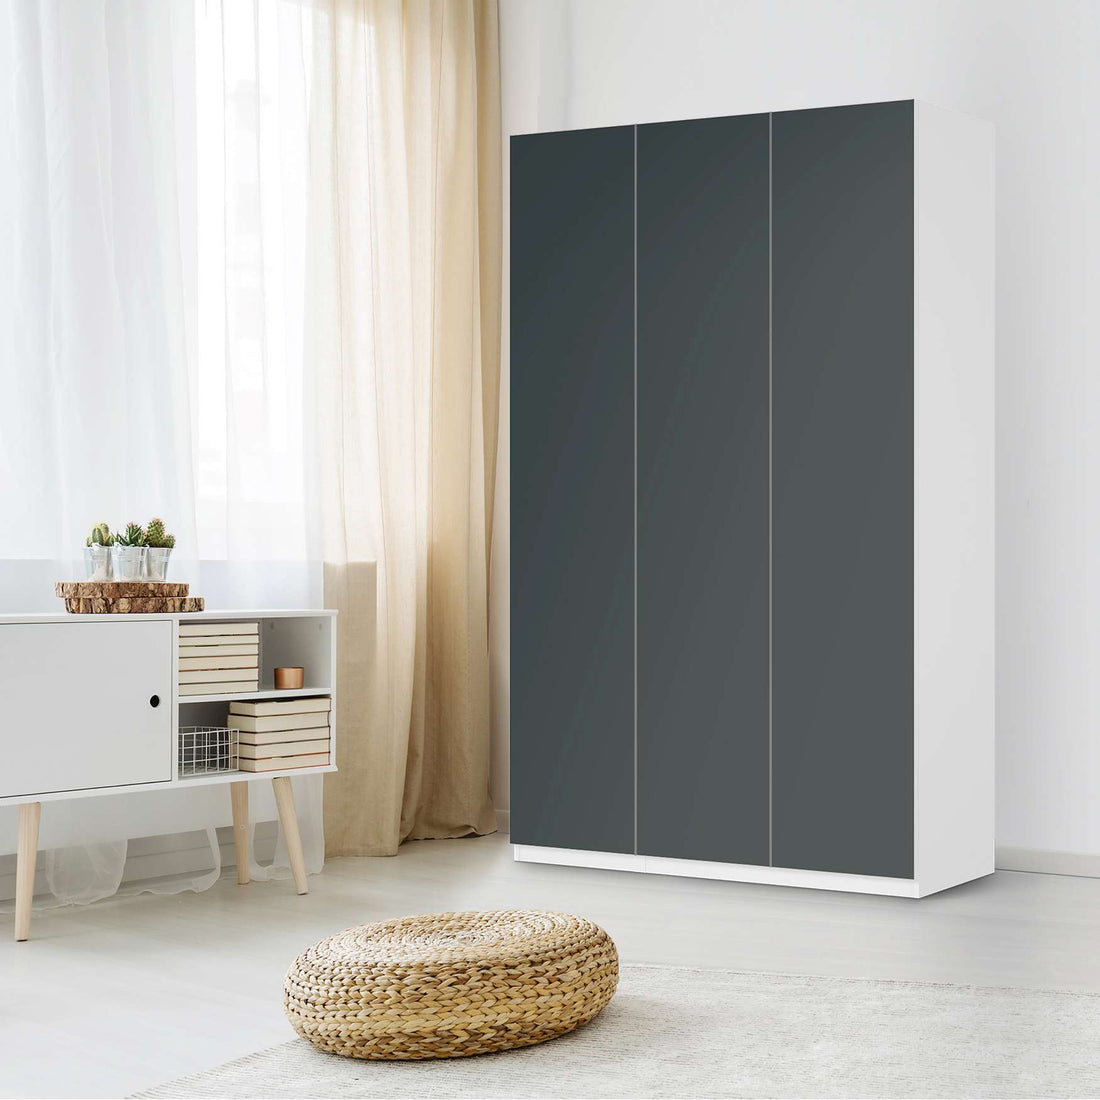 Selbstklebende Folie Blaugrau Dark - IKEA Pax Schrank 236 cm Höhe - 3 Türen - Schlafzimmer